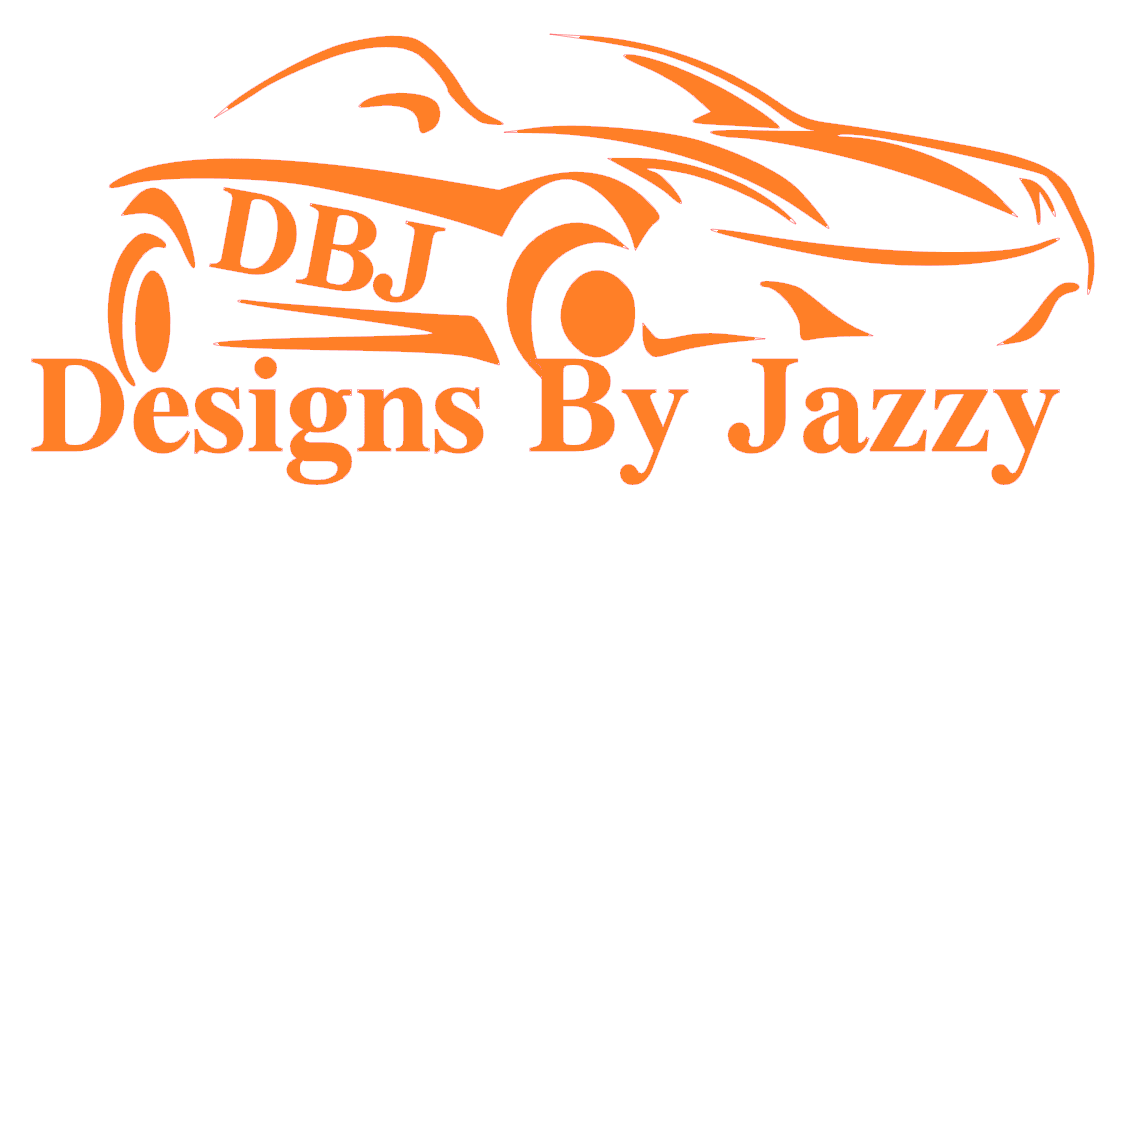 DBJ Designs By Jazzy